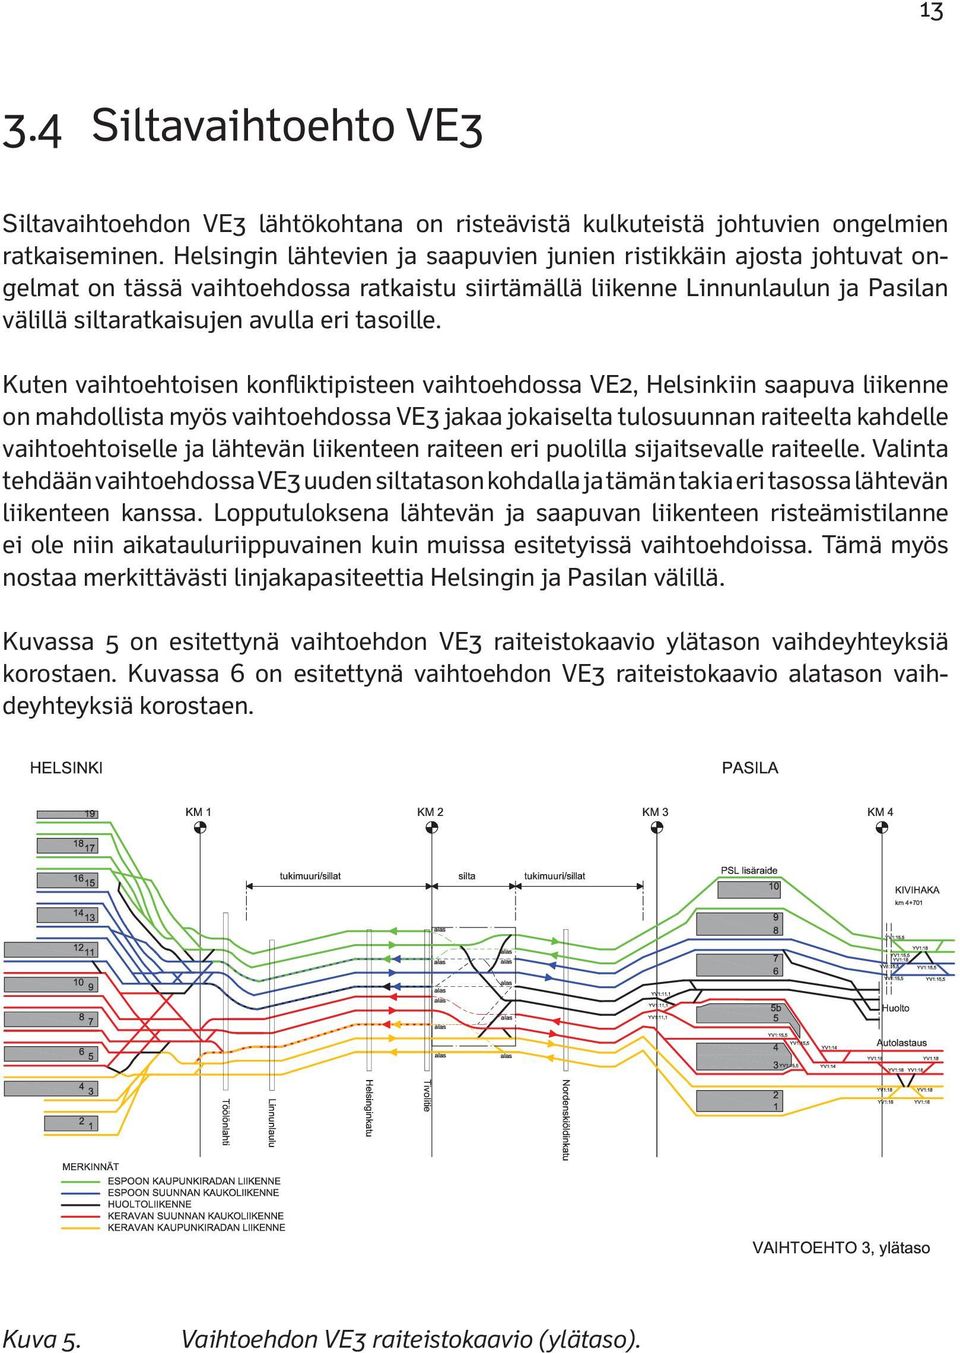 Kuten vaihtoehtoisen konfliktipisteen vaihtoehdossa VE2, Helsinkiin saapuva liikenne on mahdollista myös vaihtoehdossa VE3 jakaa jokaiselta tulosuunnan raiteelta kahdelle vaihtoehtoiselle ja lähtevän